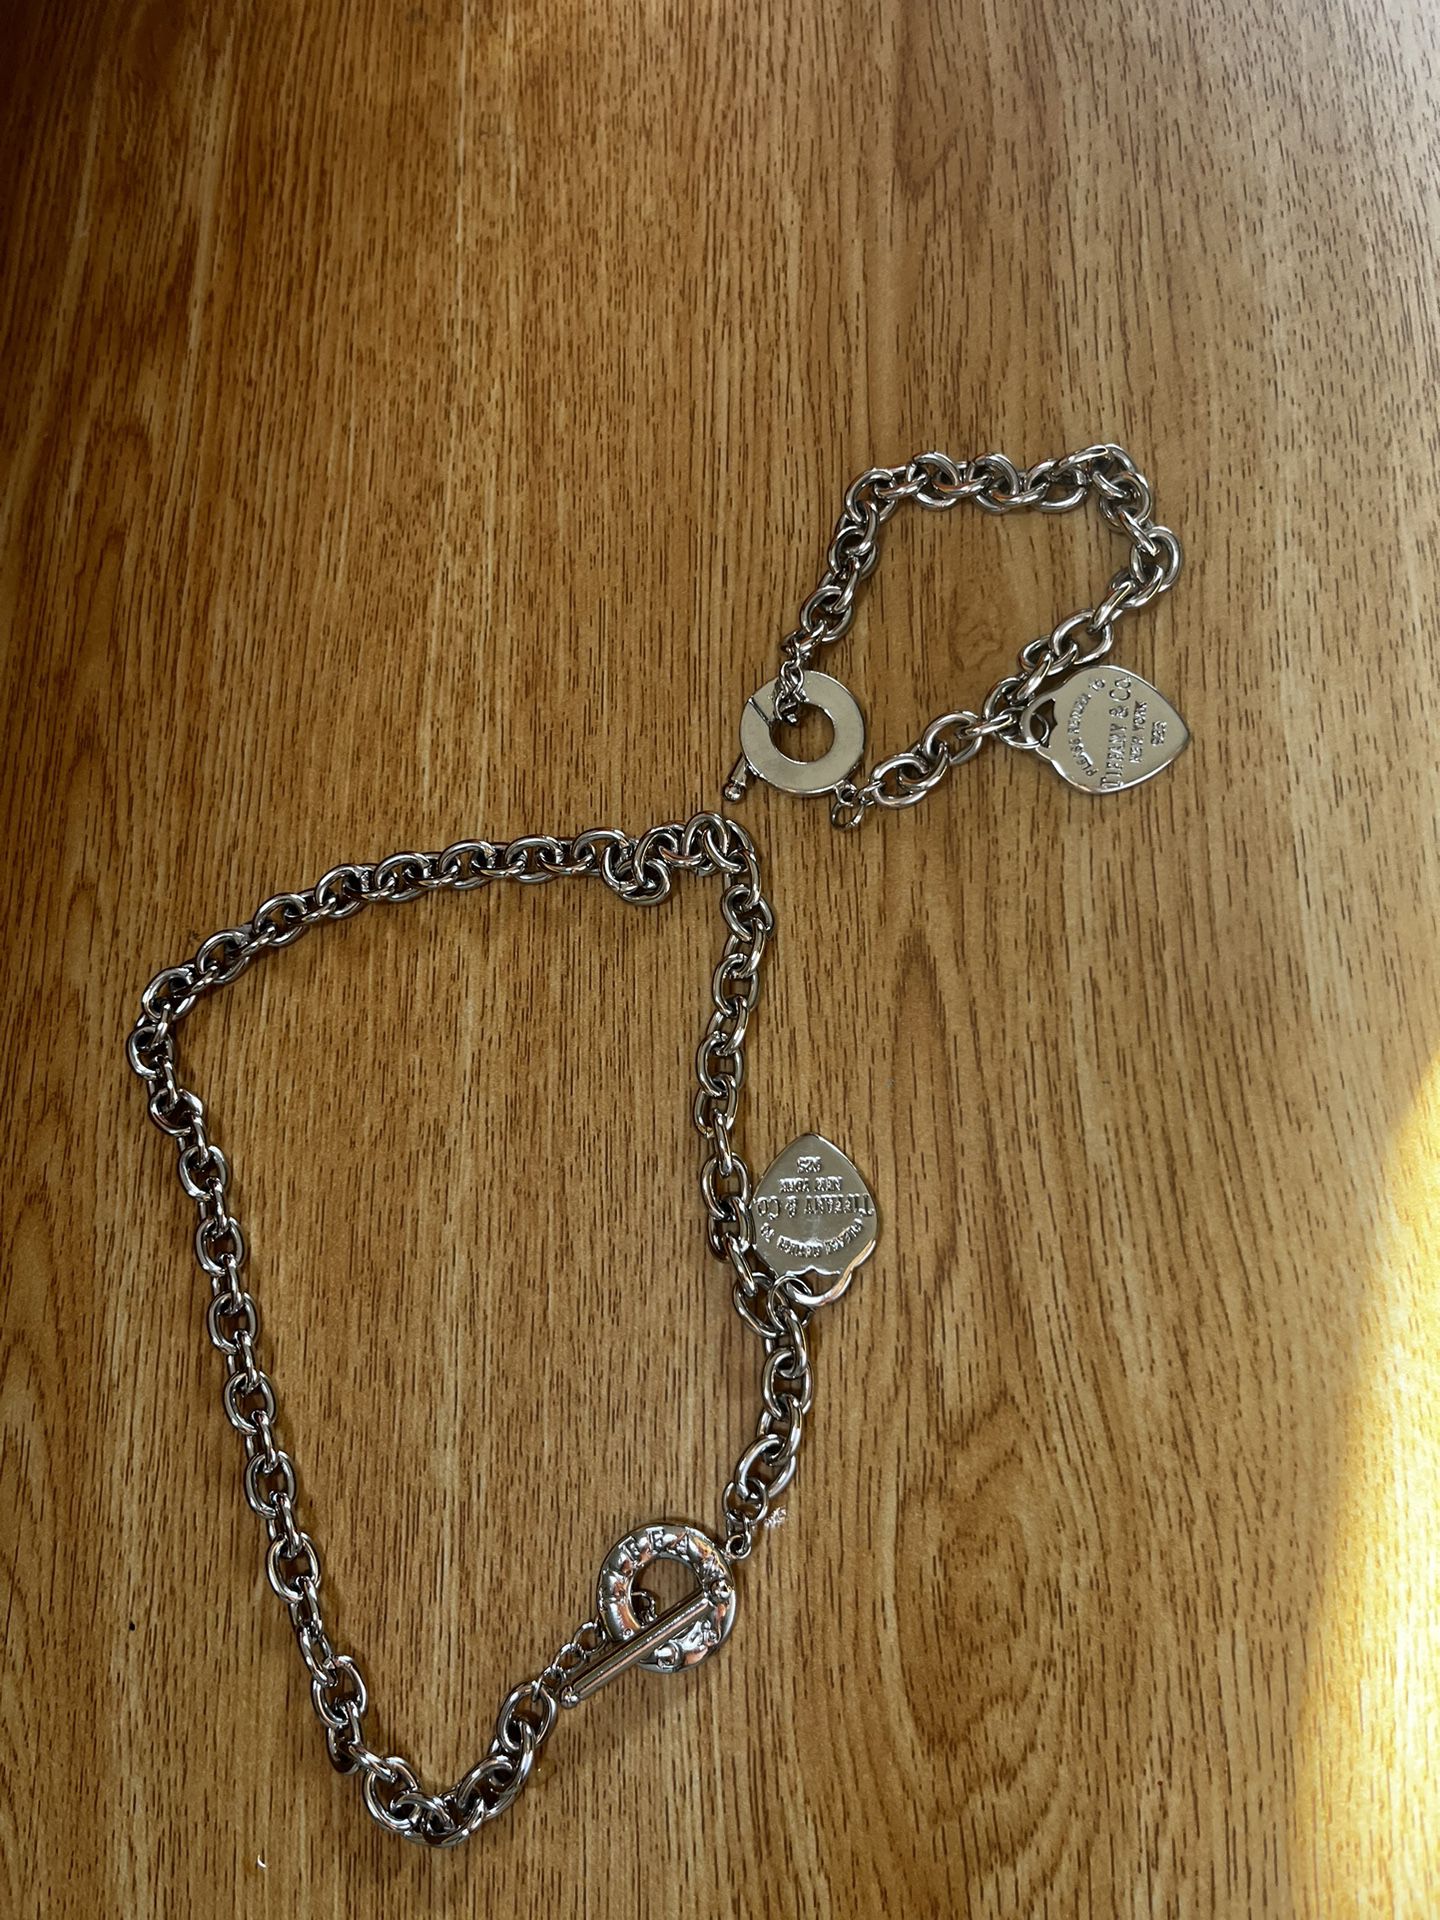 Tiffany Necklace And Bracelet